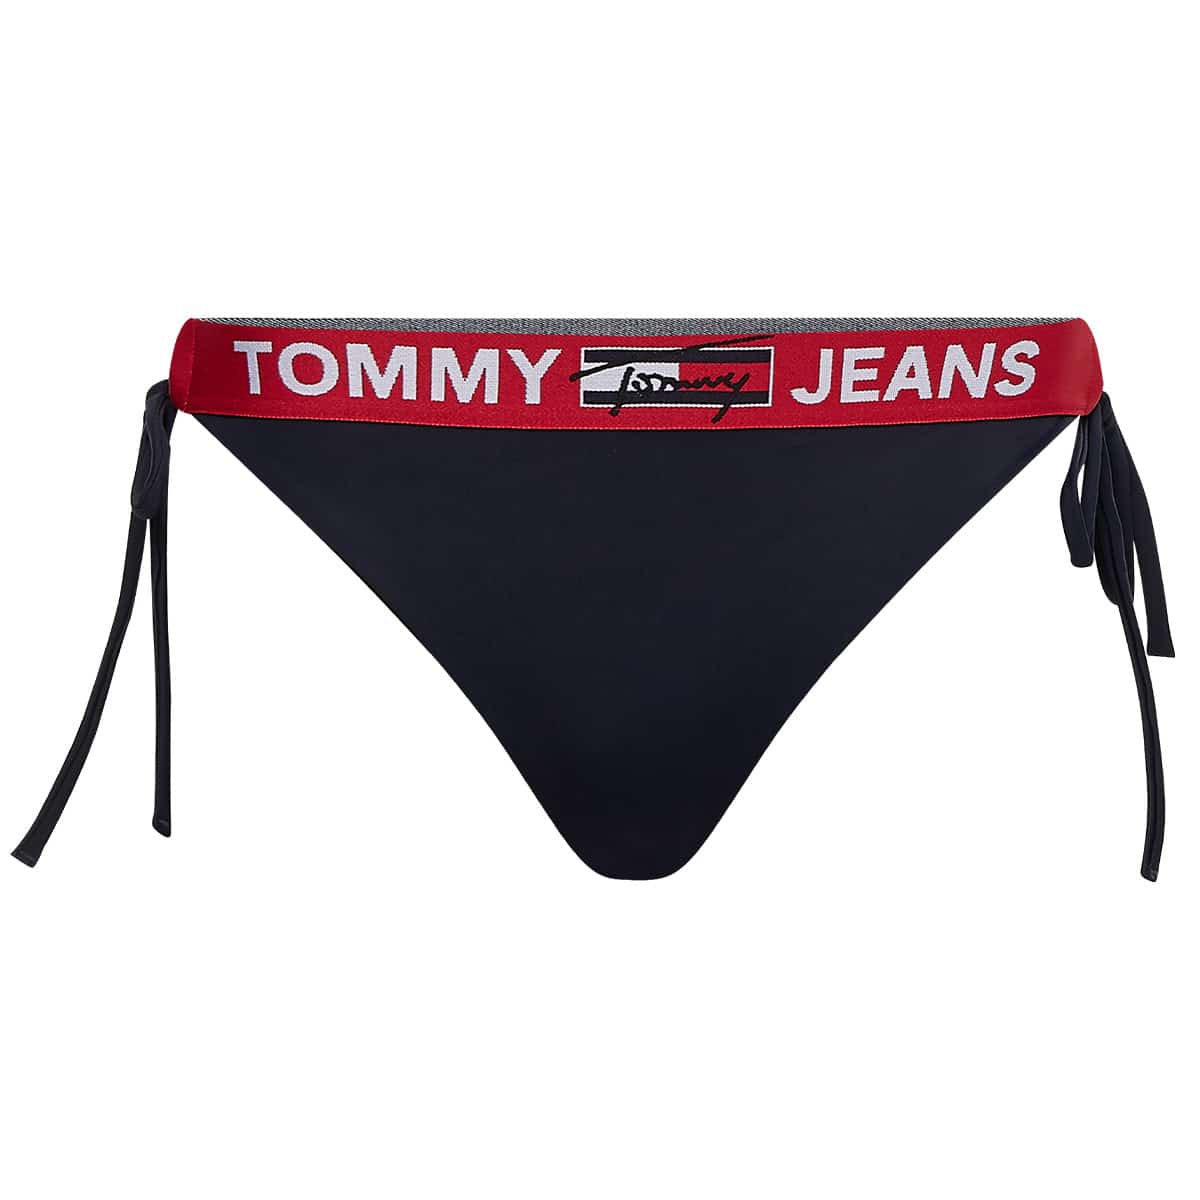 Tommy Hilfiger Bikini String/G-streng Farve: Sort, L, Dame Rødt Lingeri